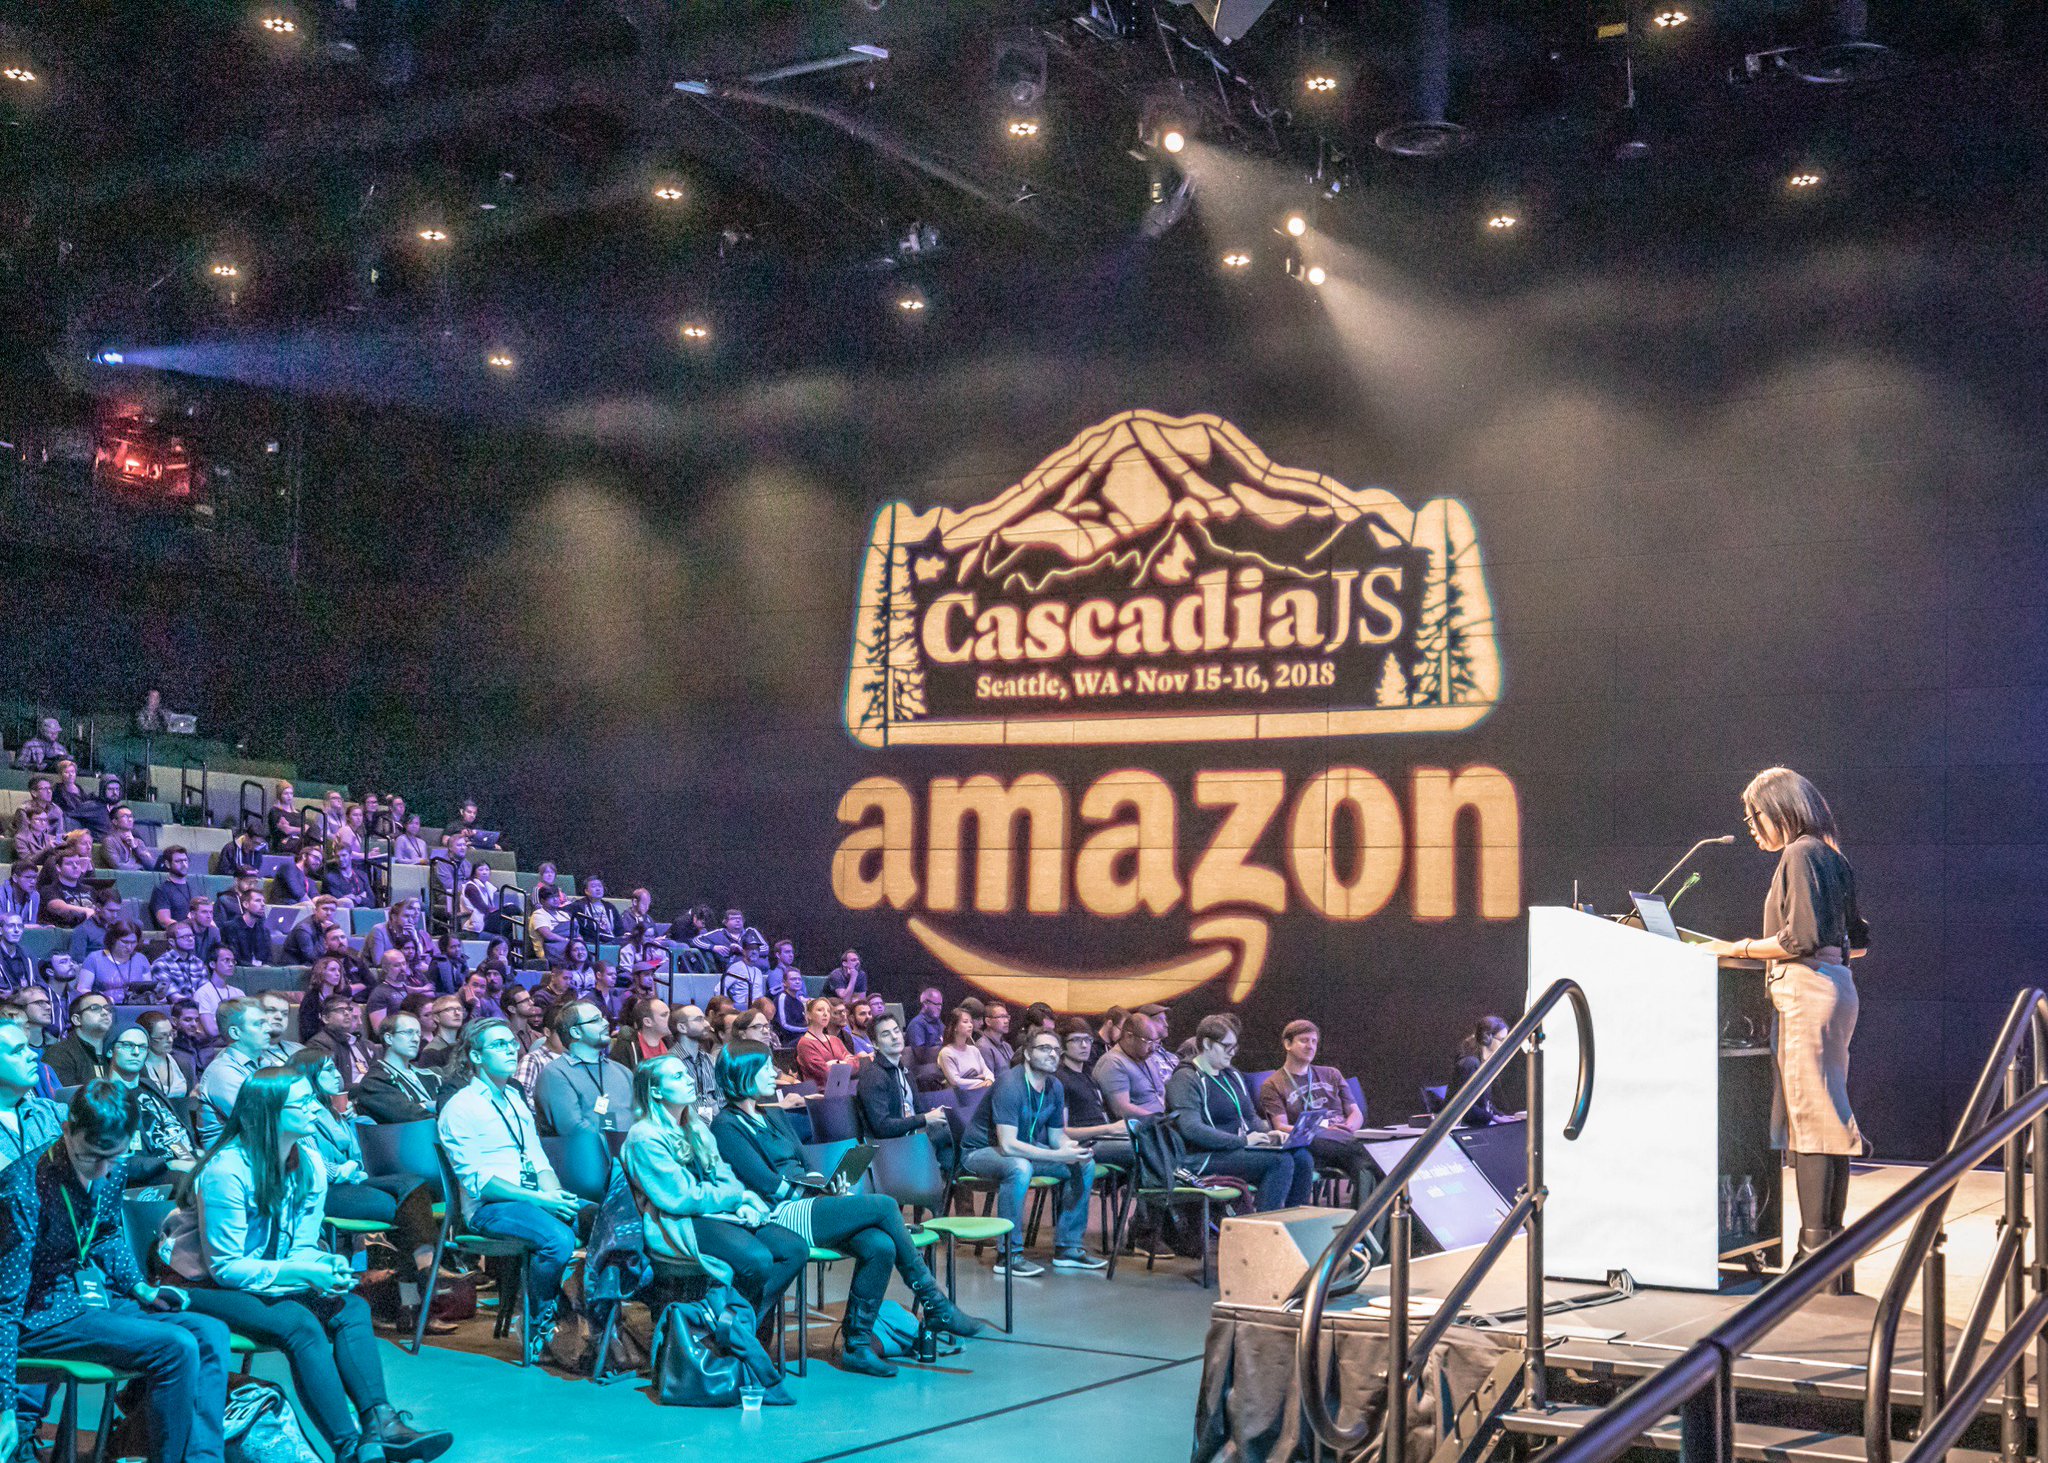 Amazon logo at CascadiaJS 2018